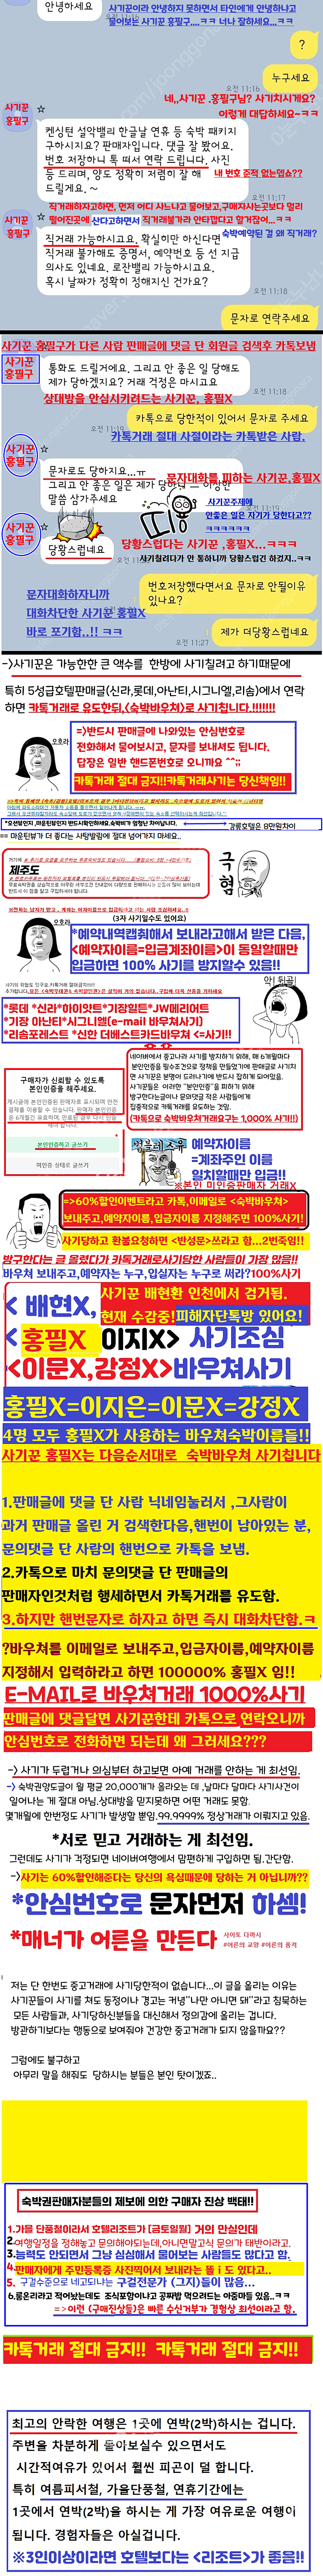 사기꾼 검거소식 (이제 홍필구만 잡으면 됩니다!!.카톡거래 절대금지!!)